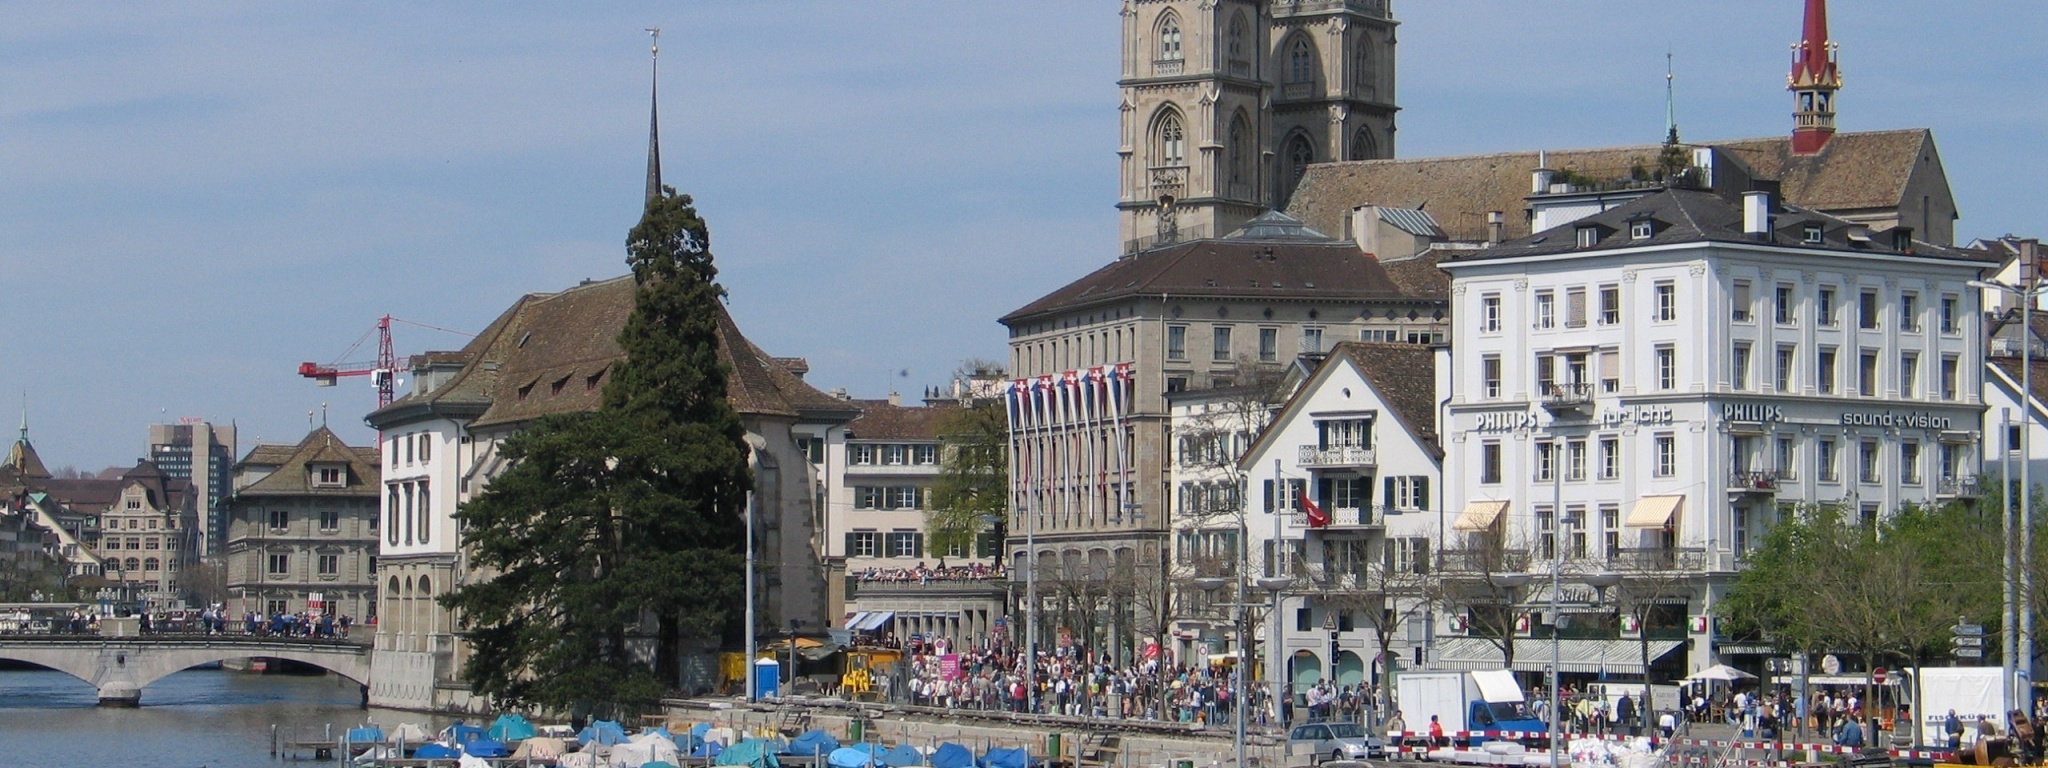 Rathaus Zurich Switzerland